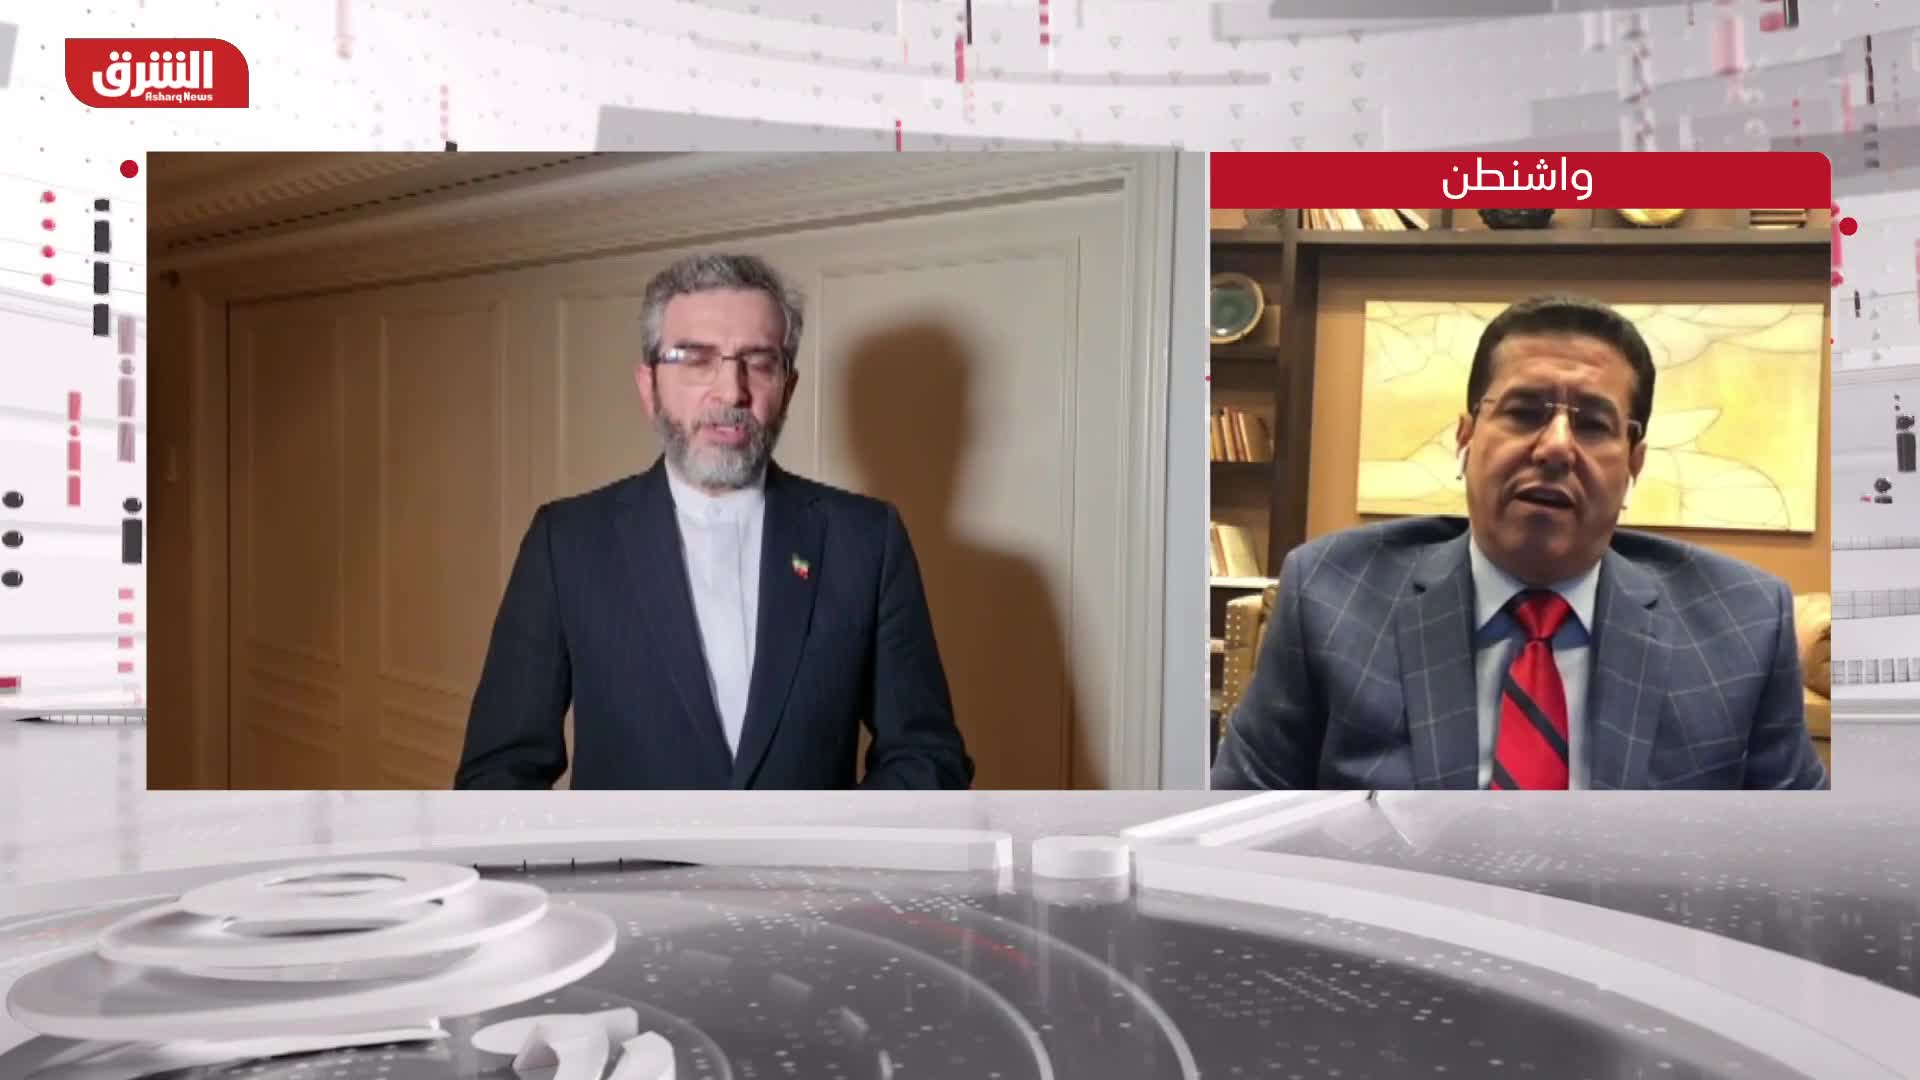 طارق الشامي: مفاوضات فيينا النووية قد تكون استنفدت معناها إذا أصرّ الإيرانيون على الحصول على موقفهم